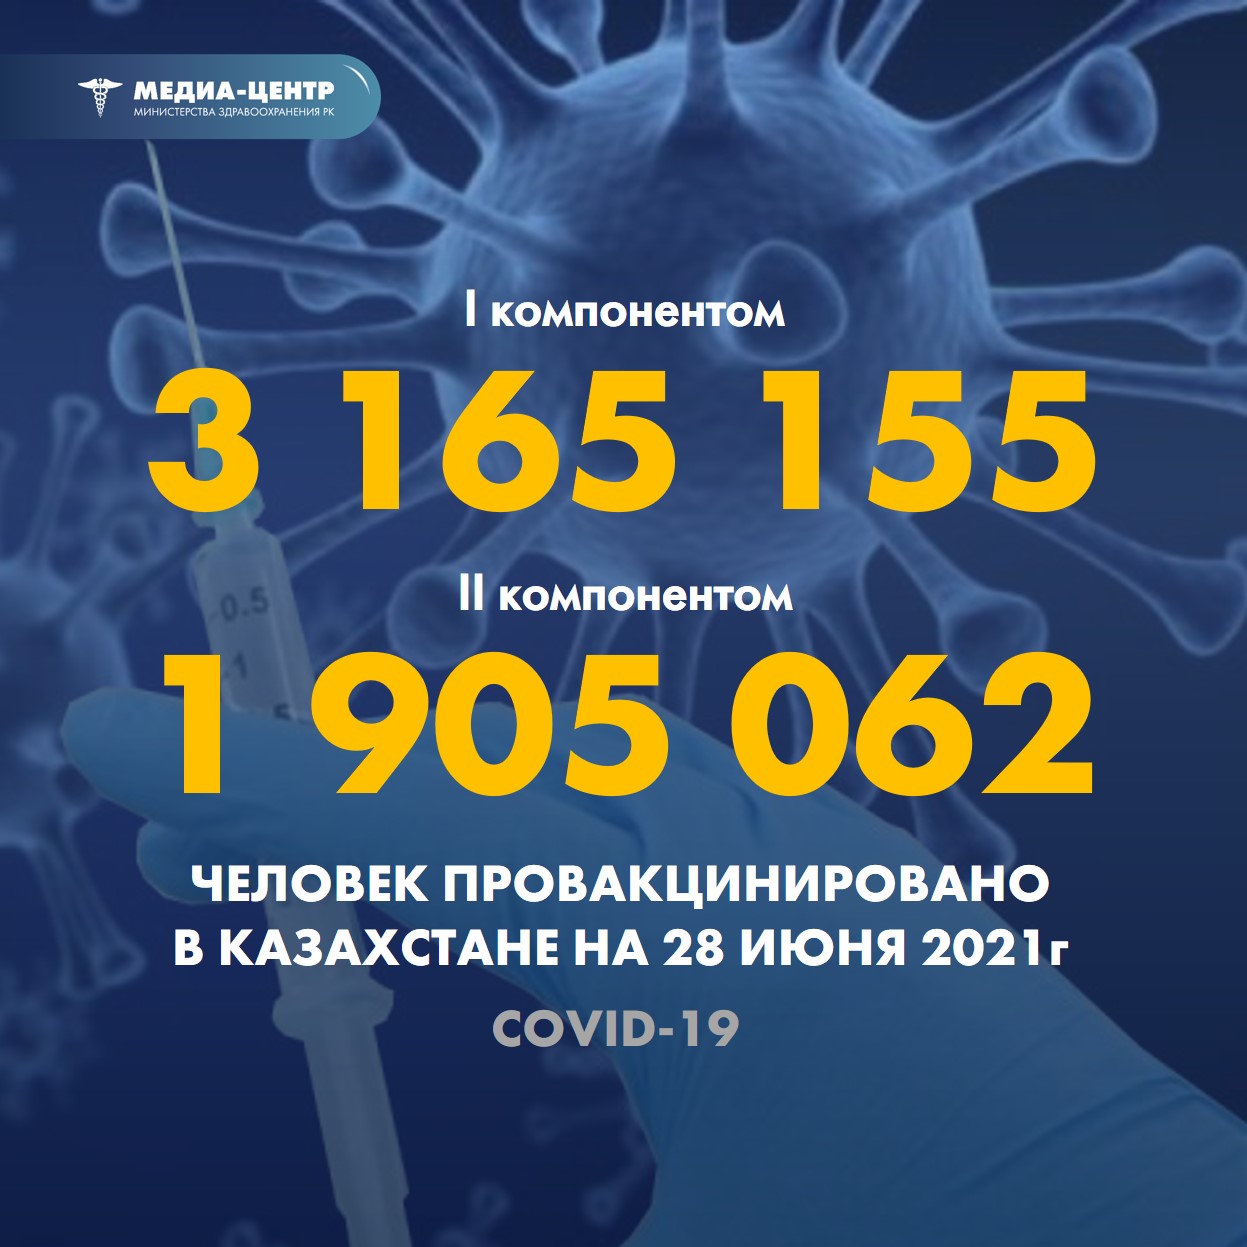 Информация о проведении вакцинации населения против КВИ на 28.06.2021 г. в разрезе регионов